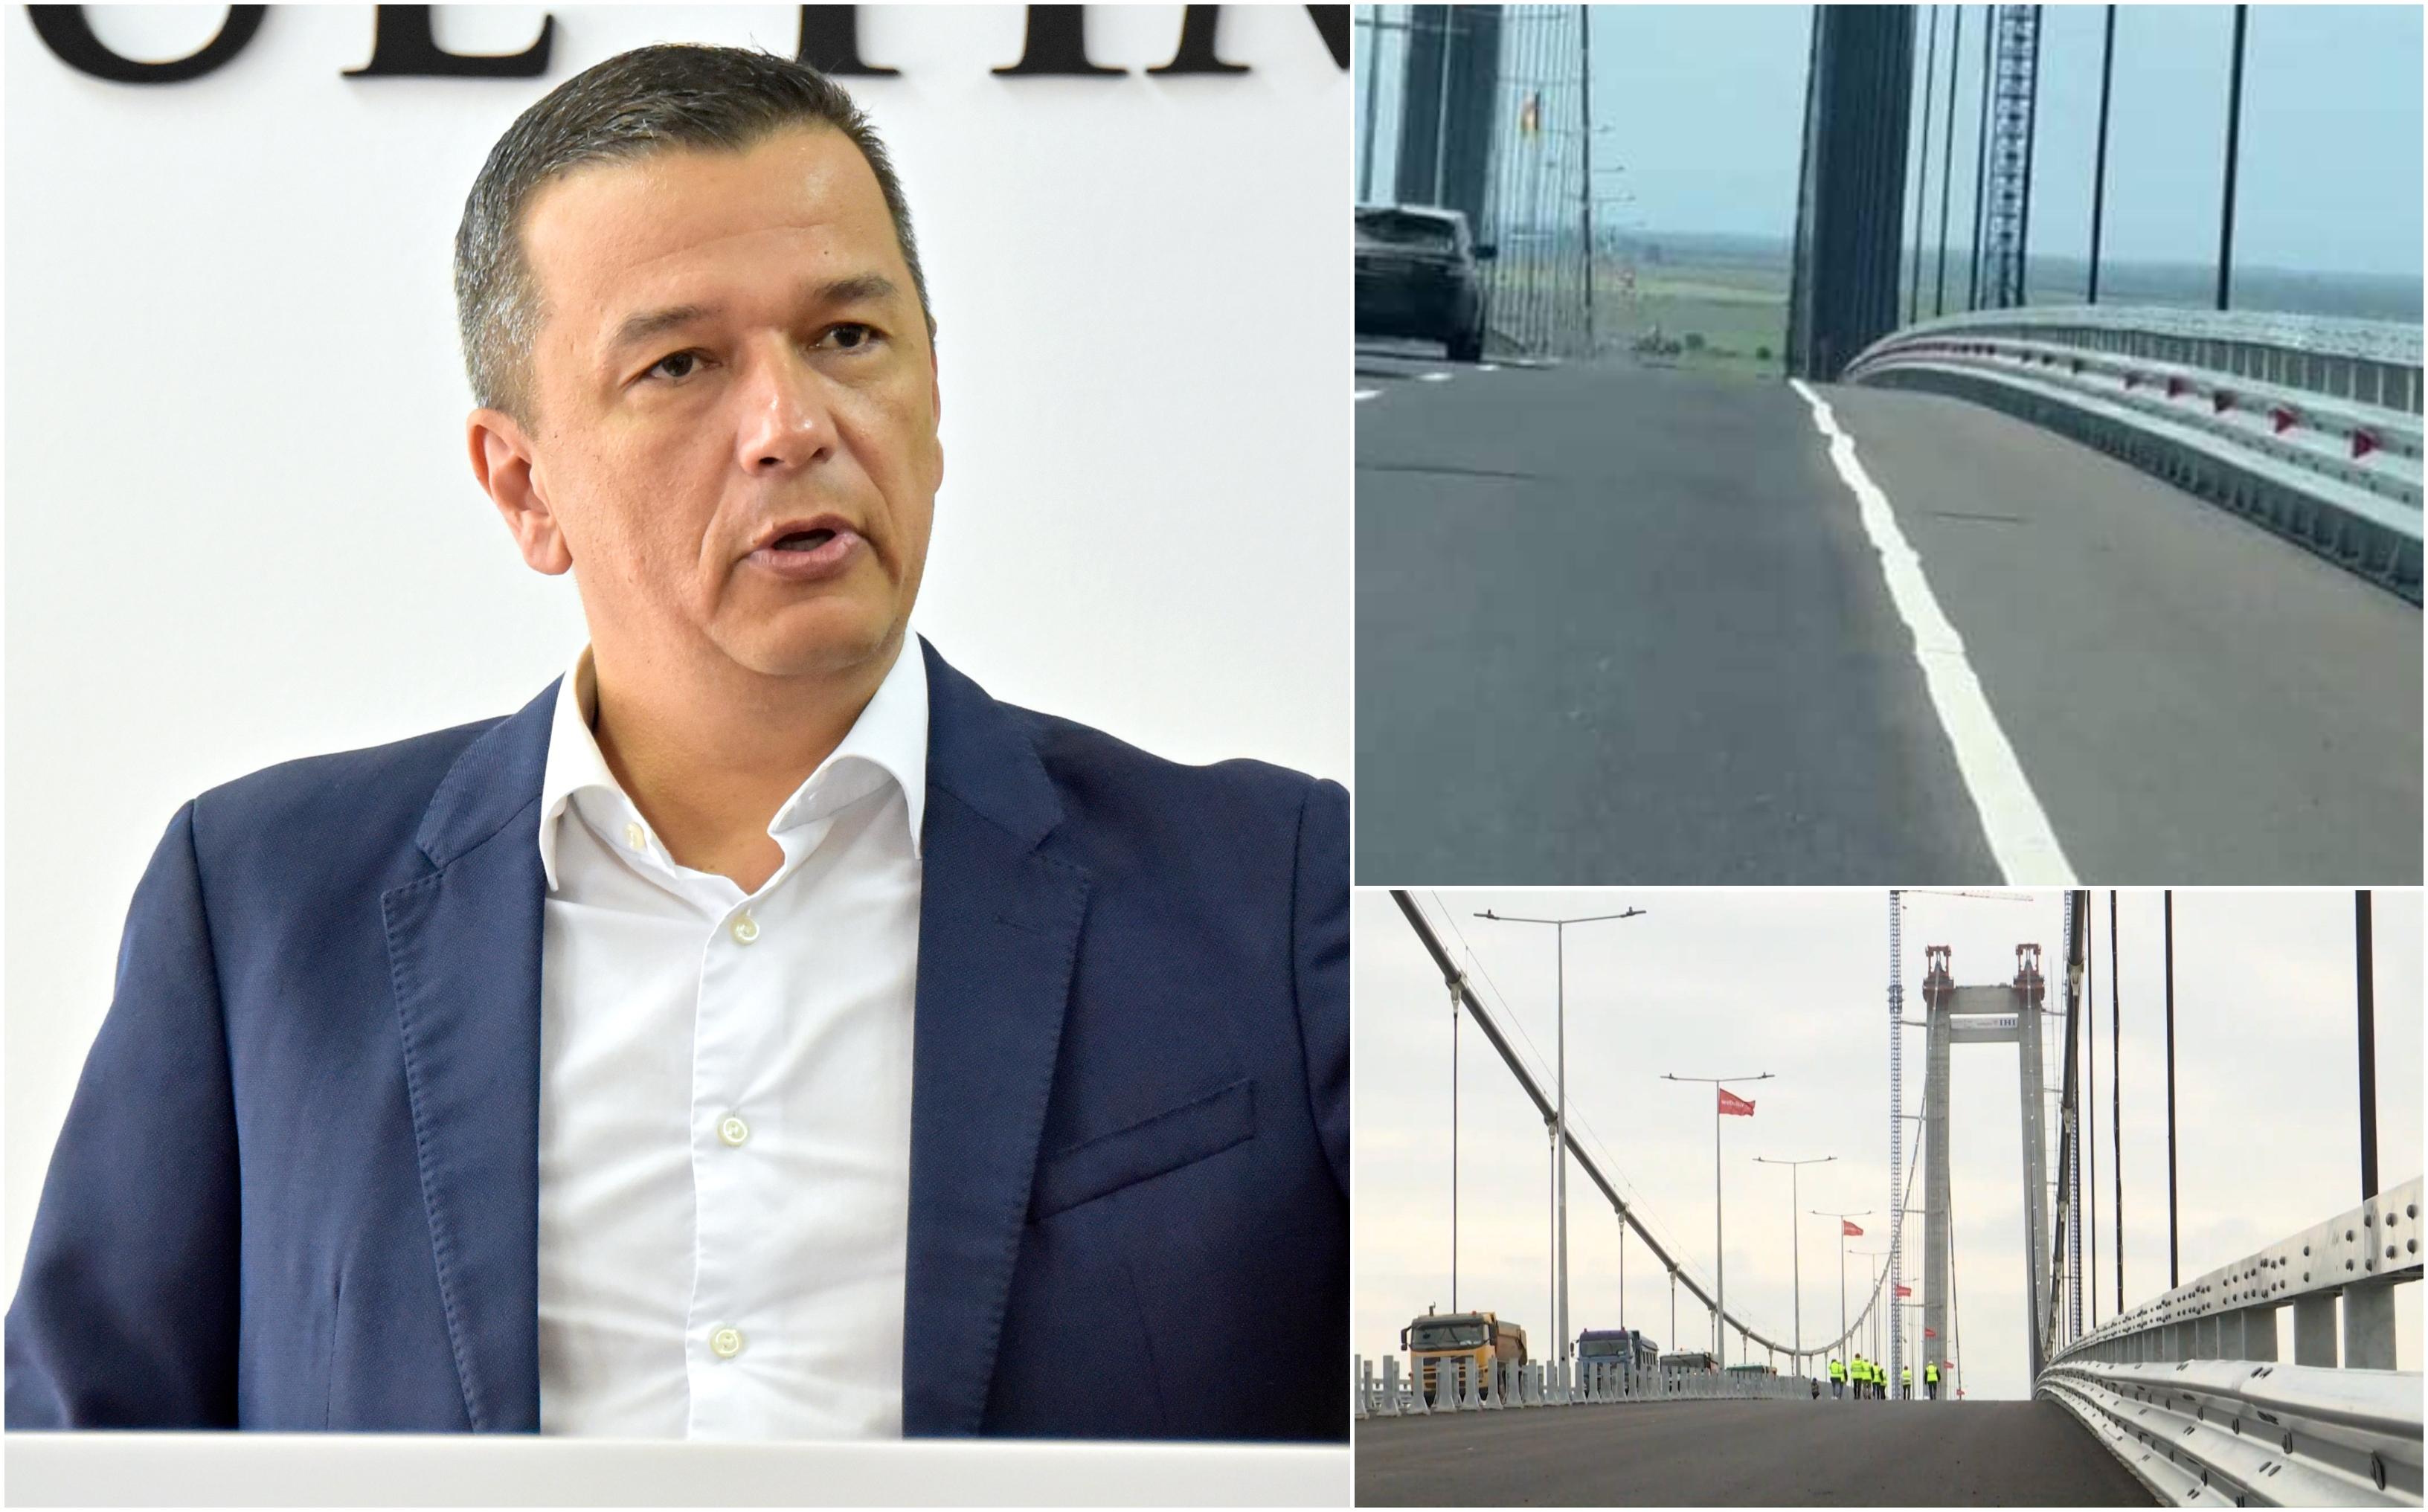 Reacţia lui Grindeanu la denivelările apărute pe podul de la Brăila. A dat vina pe şoferii care nu respectă restricţiile de tonaj